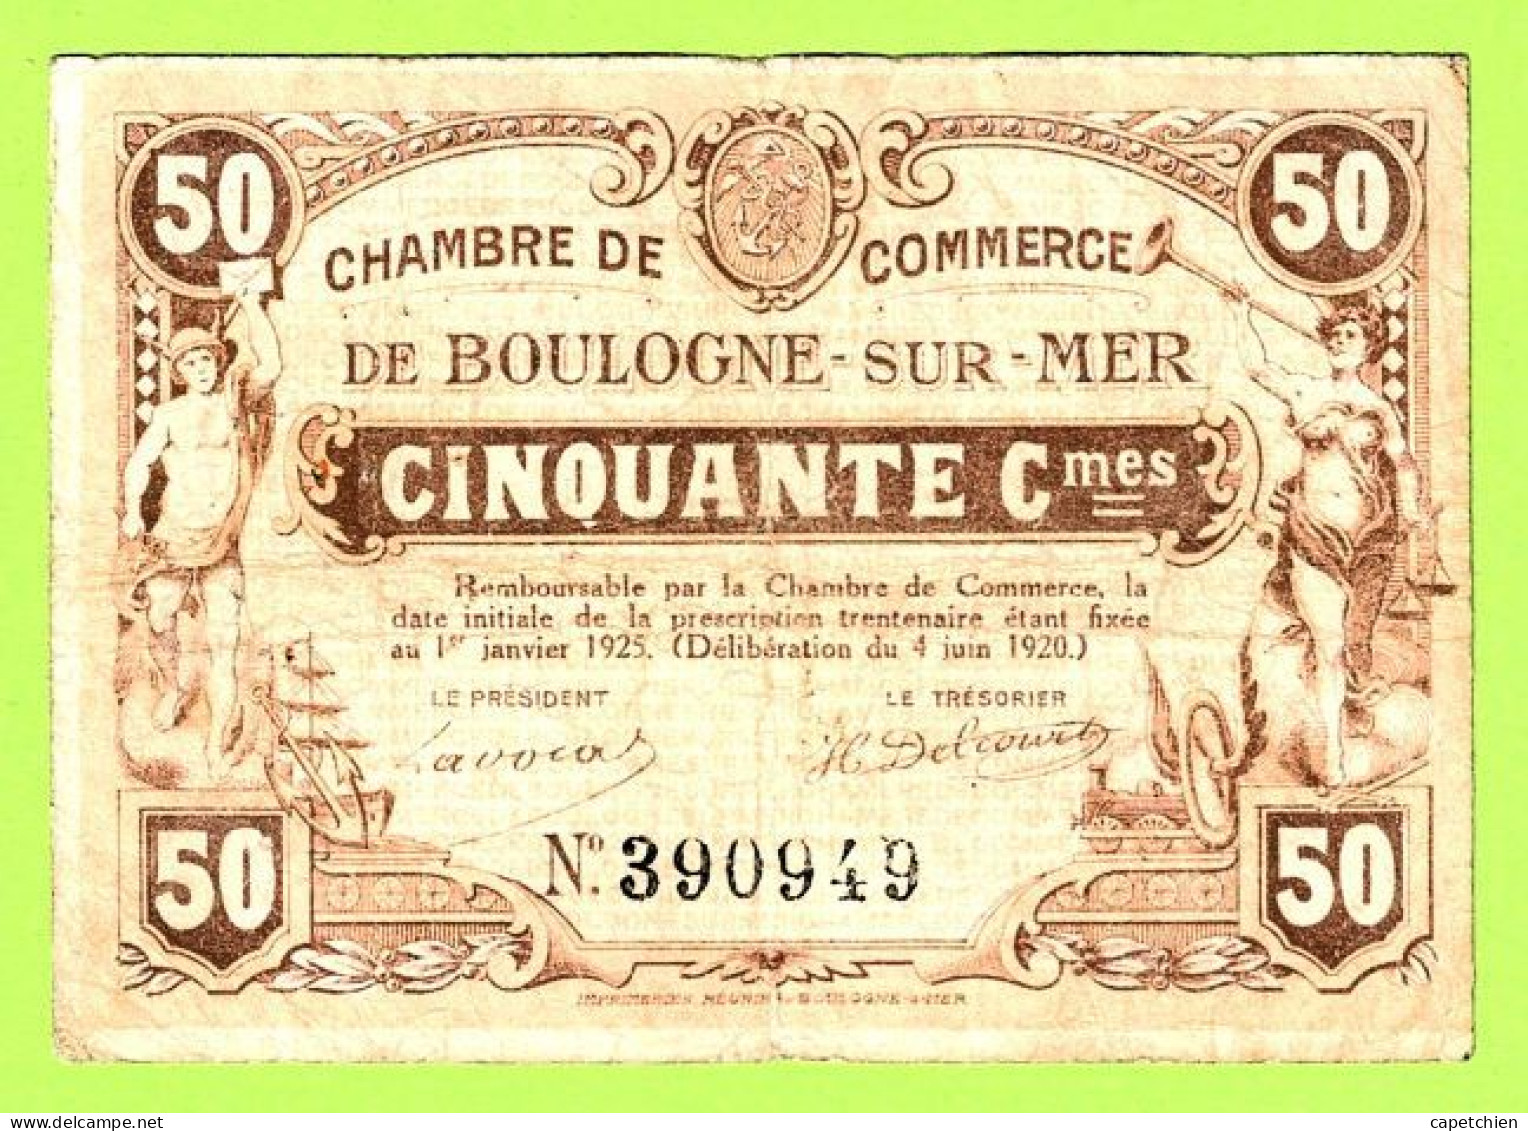 FRANCE / CHAMBRE De COMMERCE : BOULOGNE SUR MER / 50 CENTIMES / 4 UIN 1920  / N° 390949 - Handelskammer